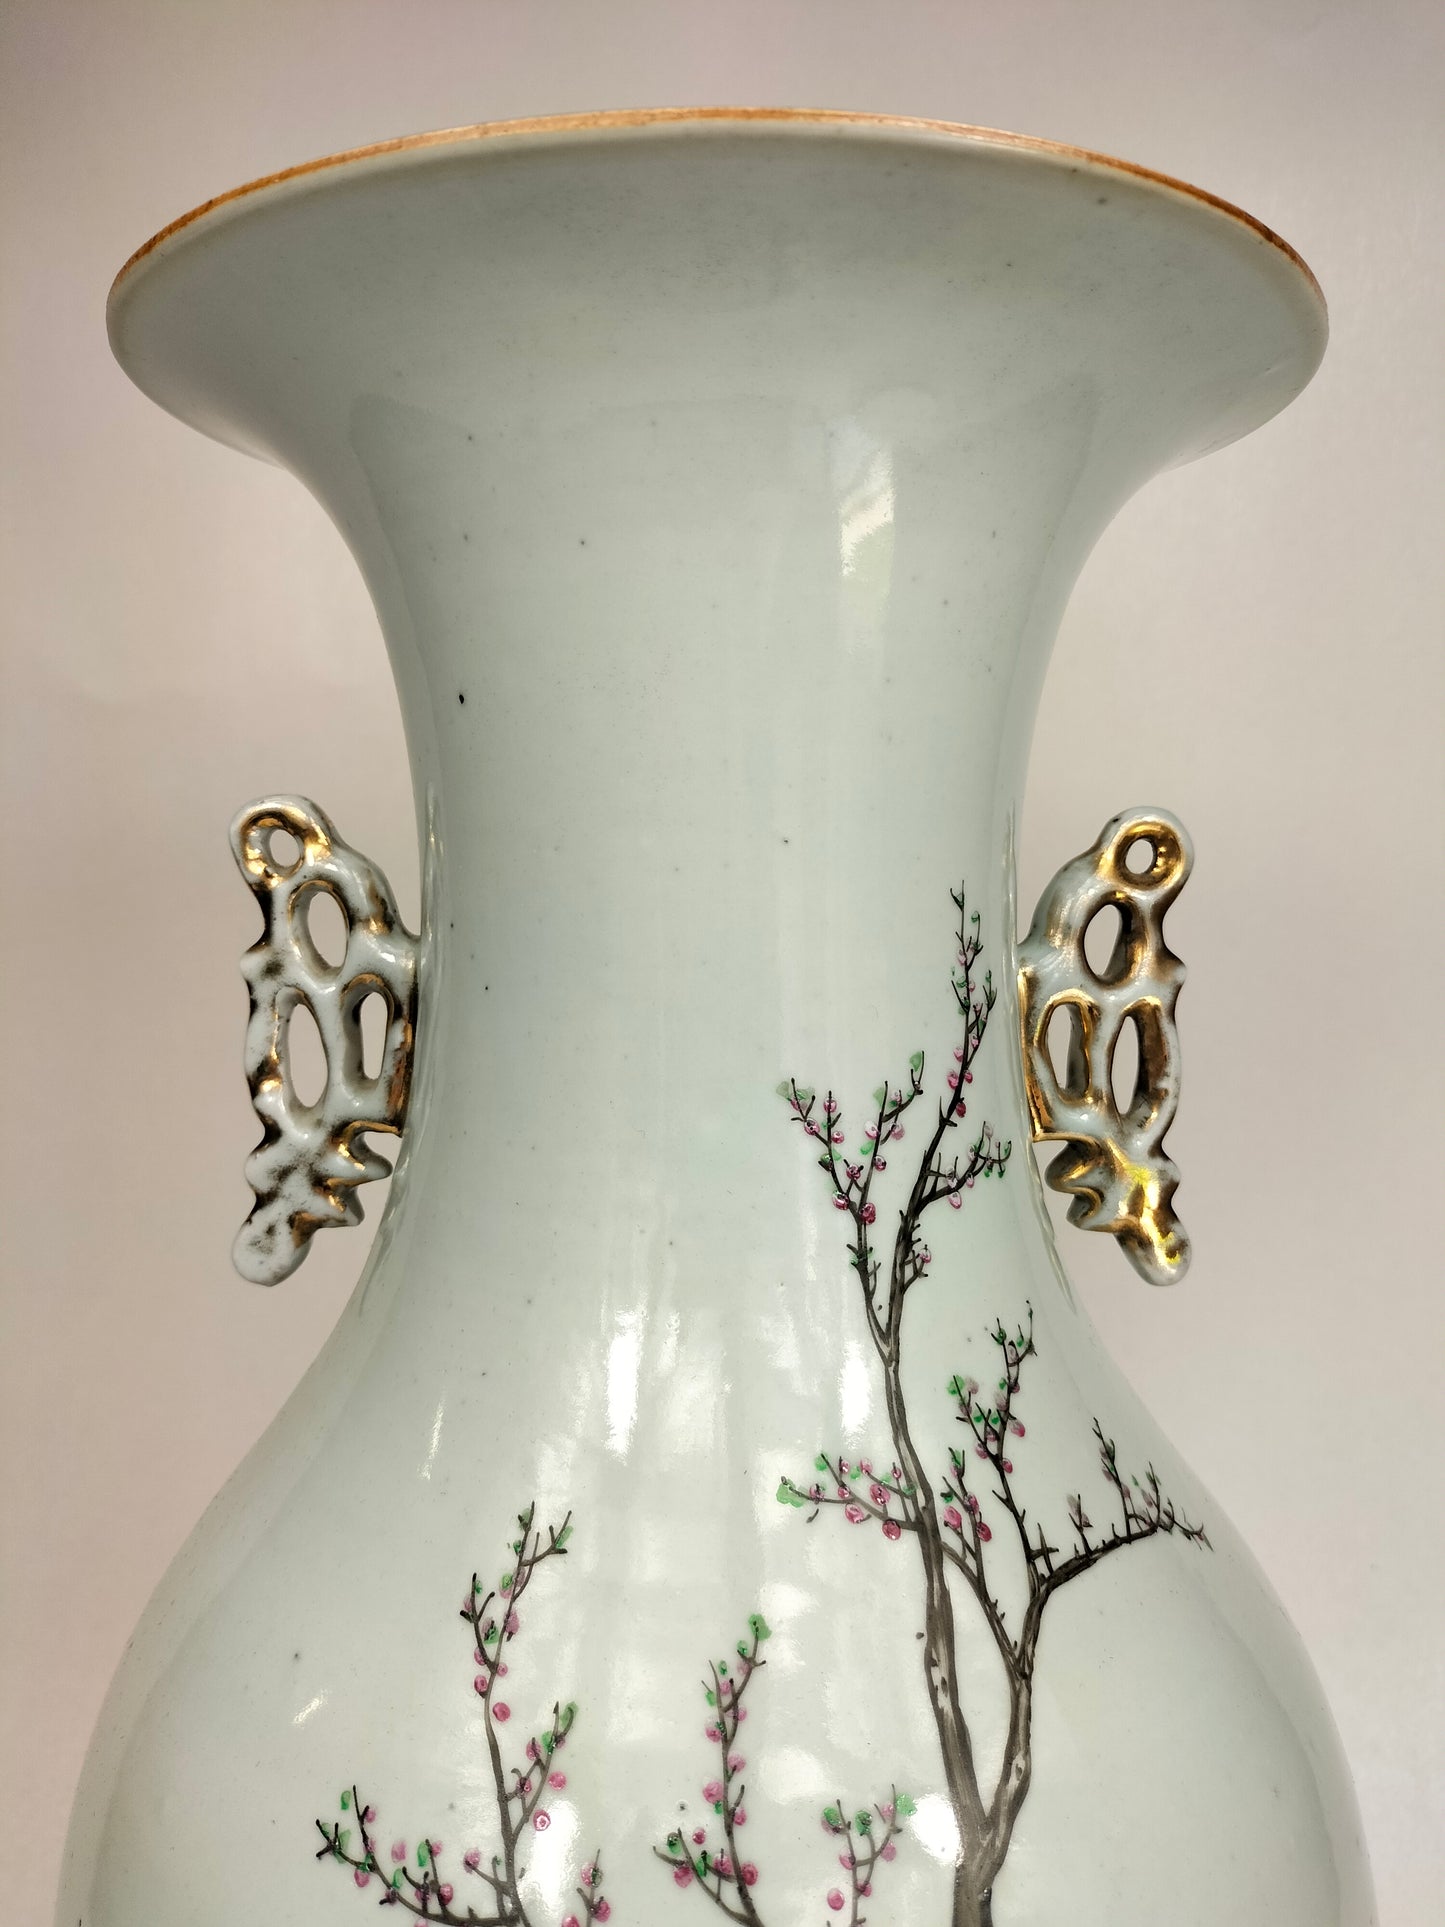 Grand vase antique chinois qianjiang à décor d'une scène de jardin // Période République (1912-1949)